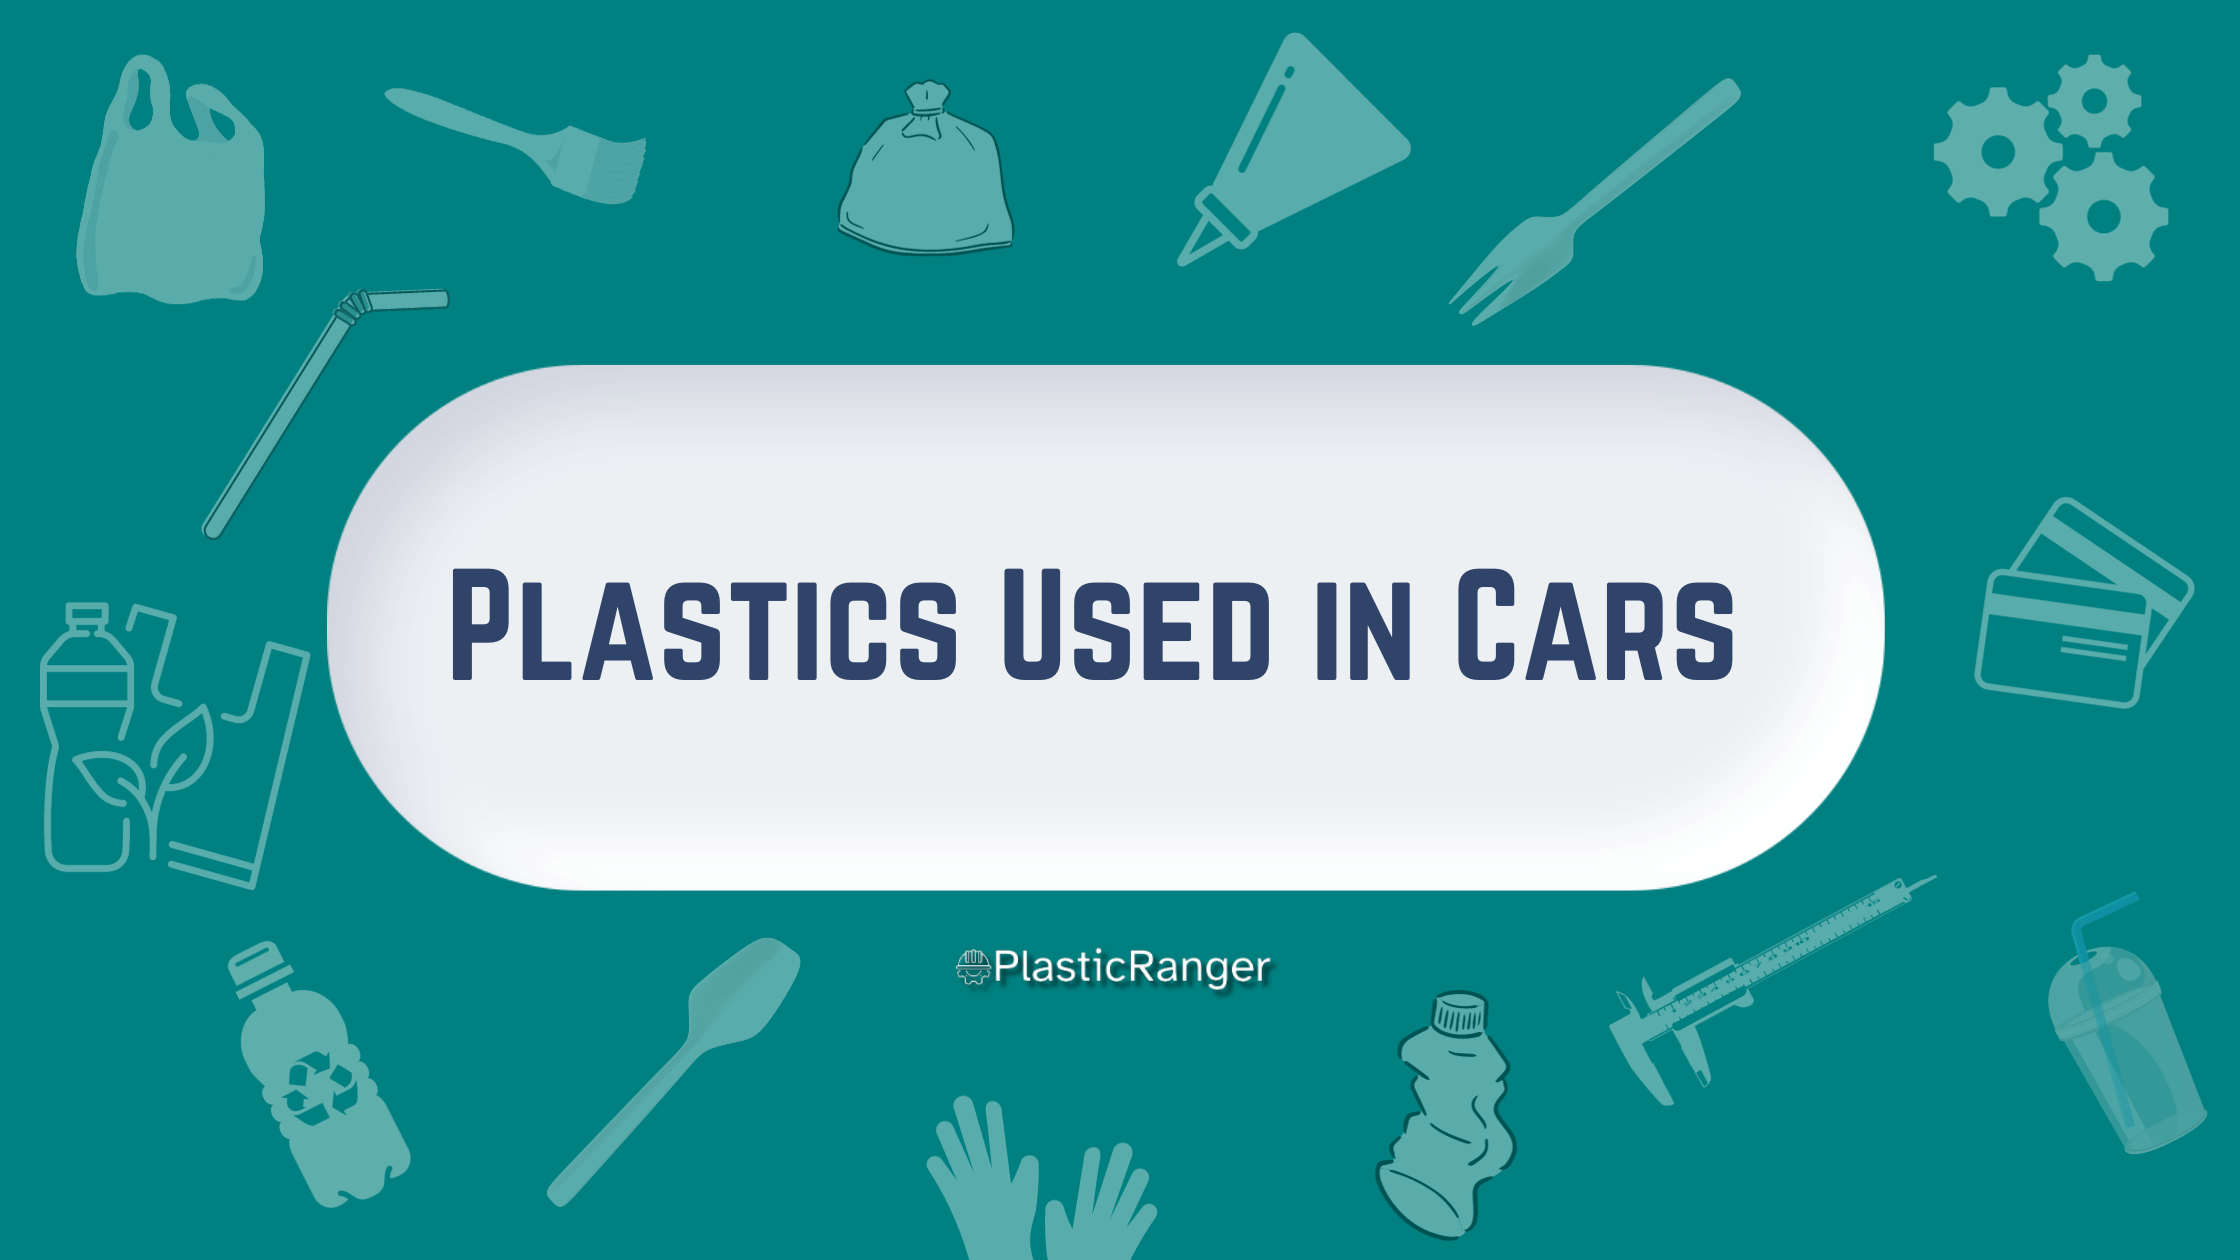 PLASTICS USED IN CARS